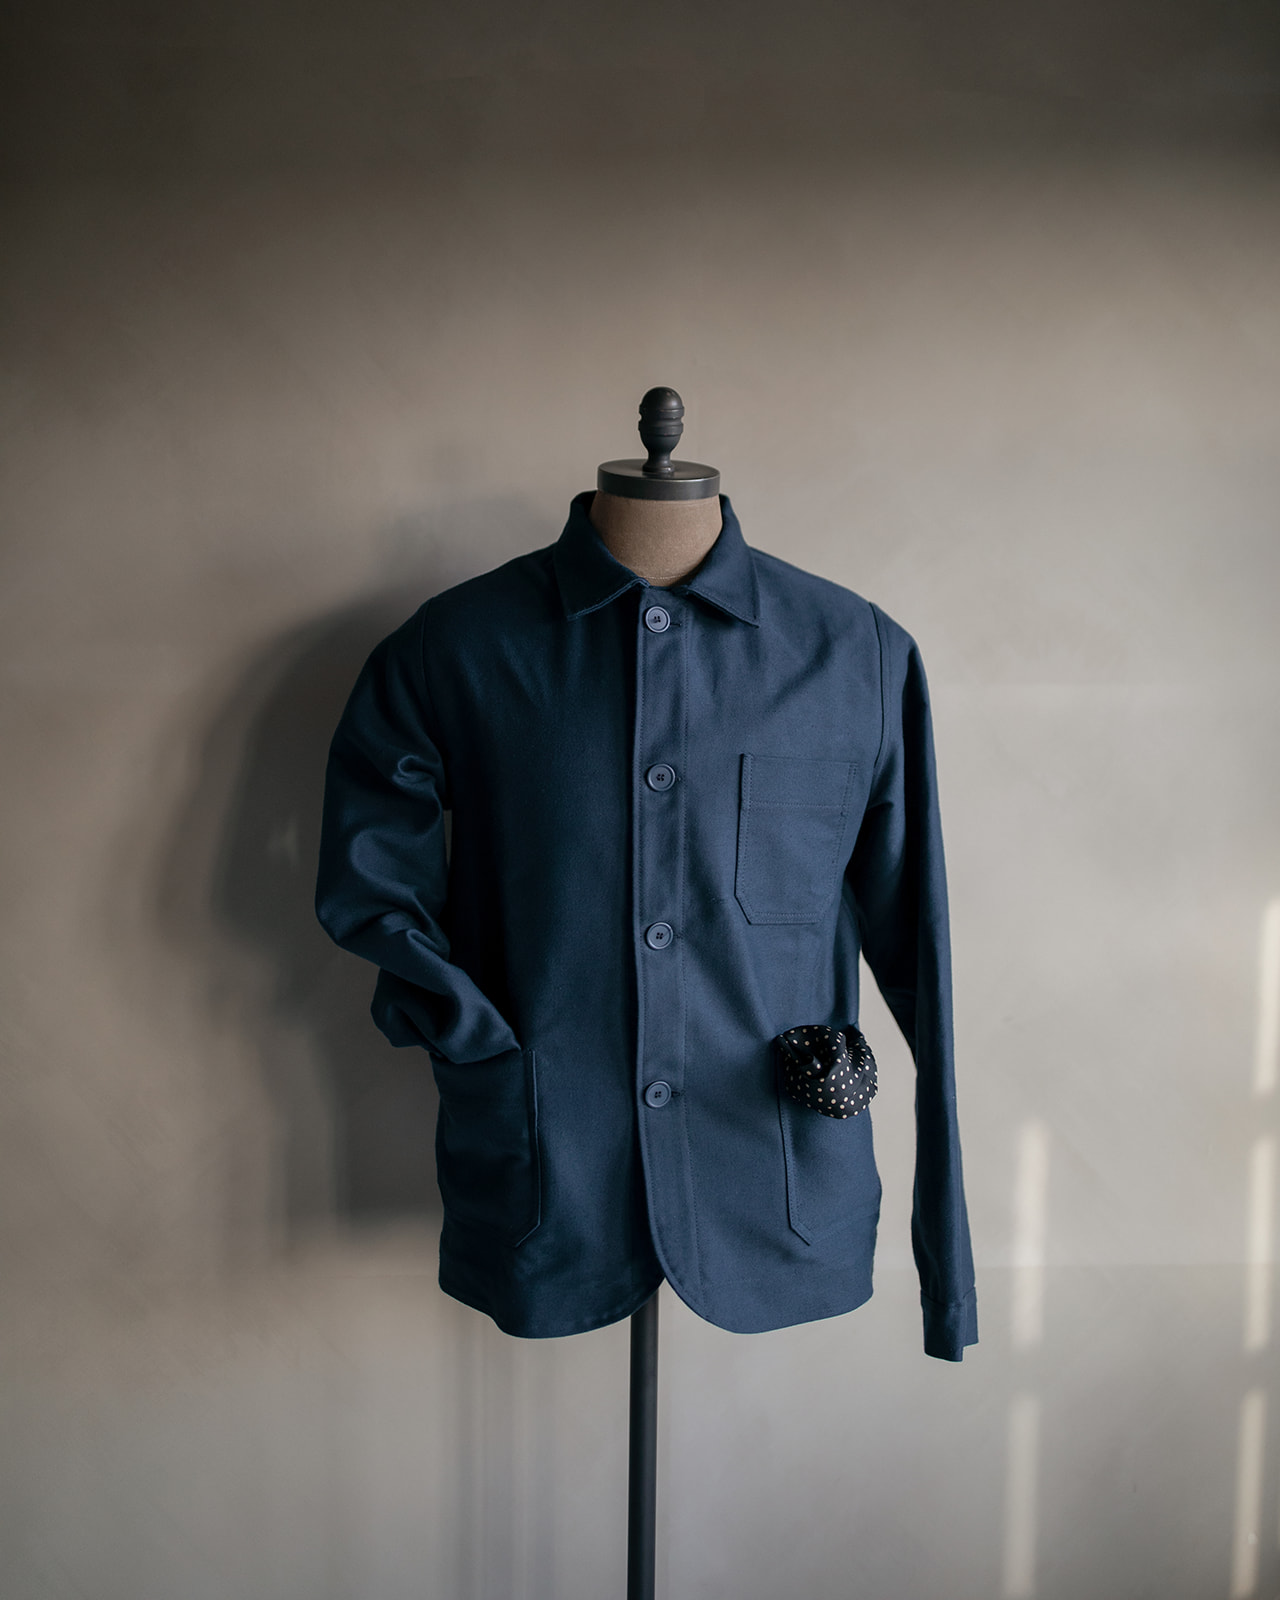 The real work jacket in Moleskine by Bleu de Chauffe